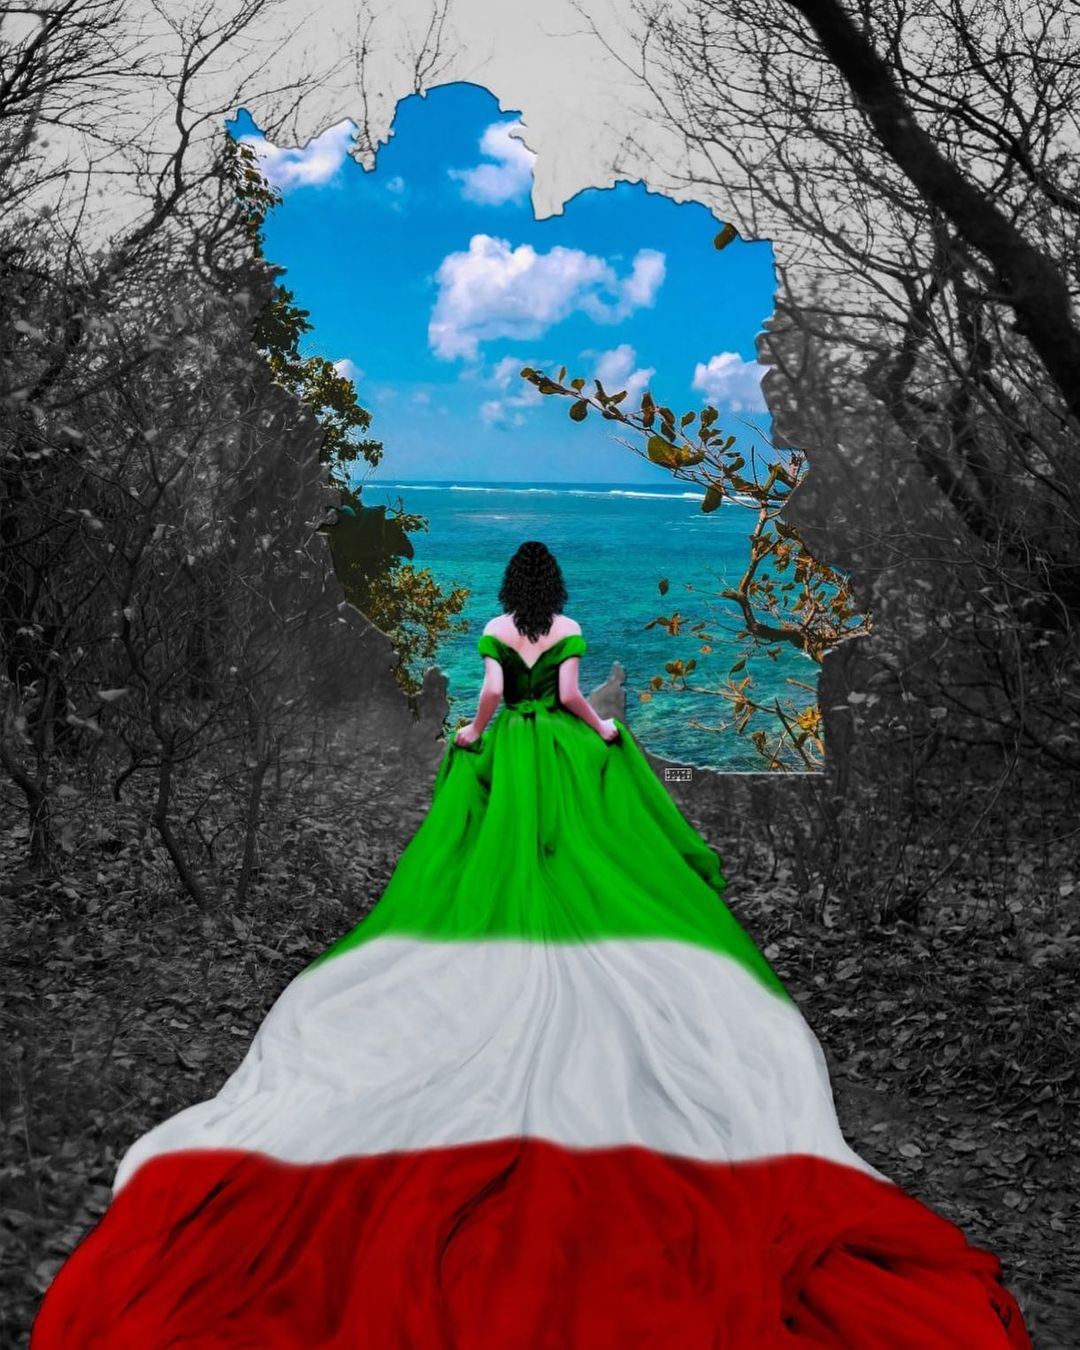 Iran Revolution Art No. 319541380_138741688992718_1278532297616301736_n